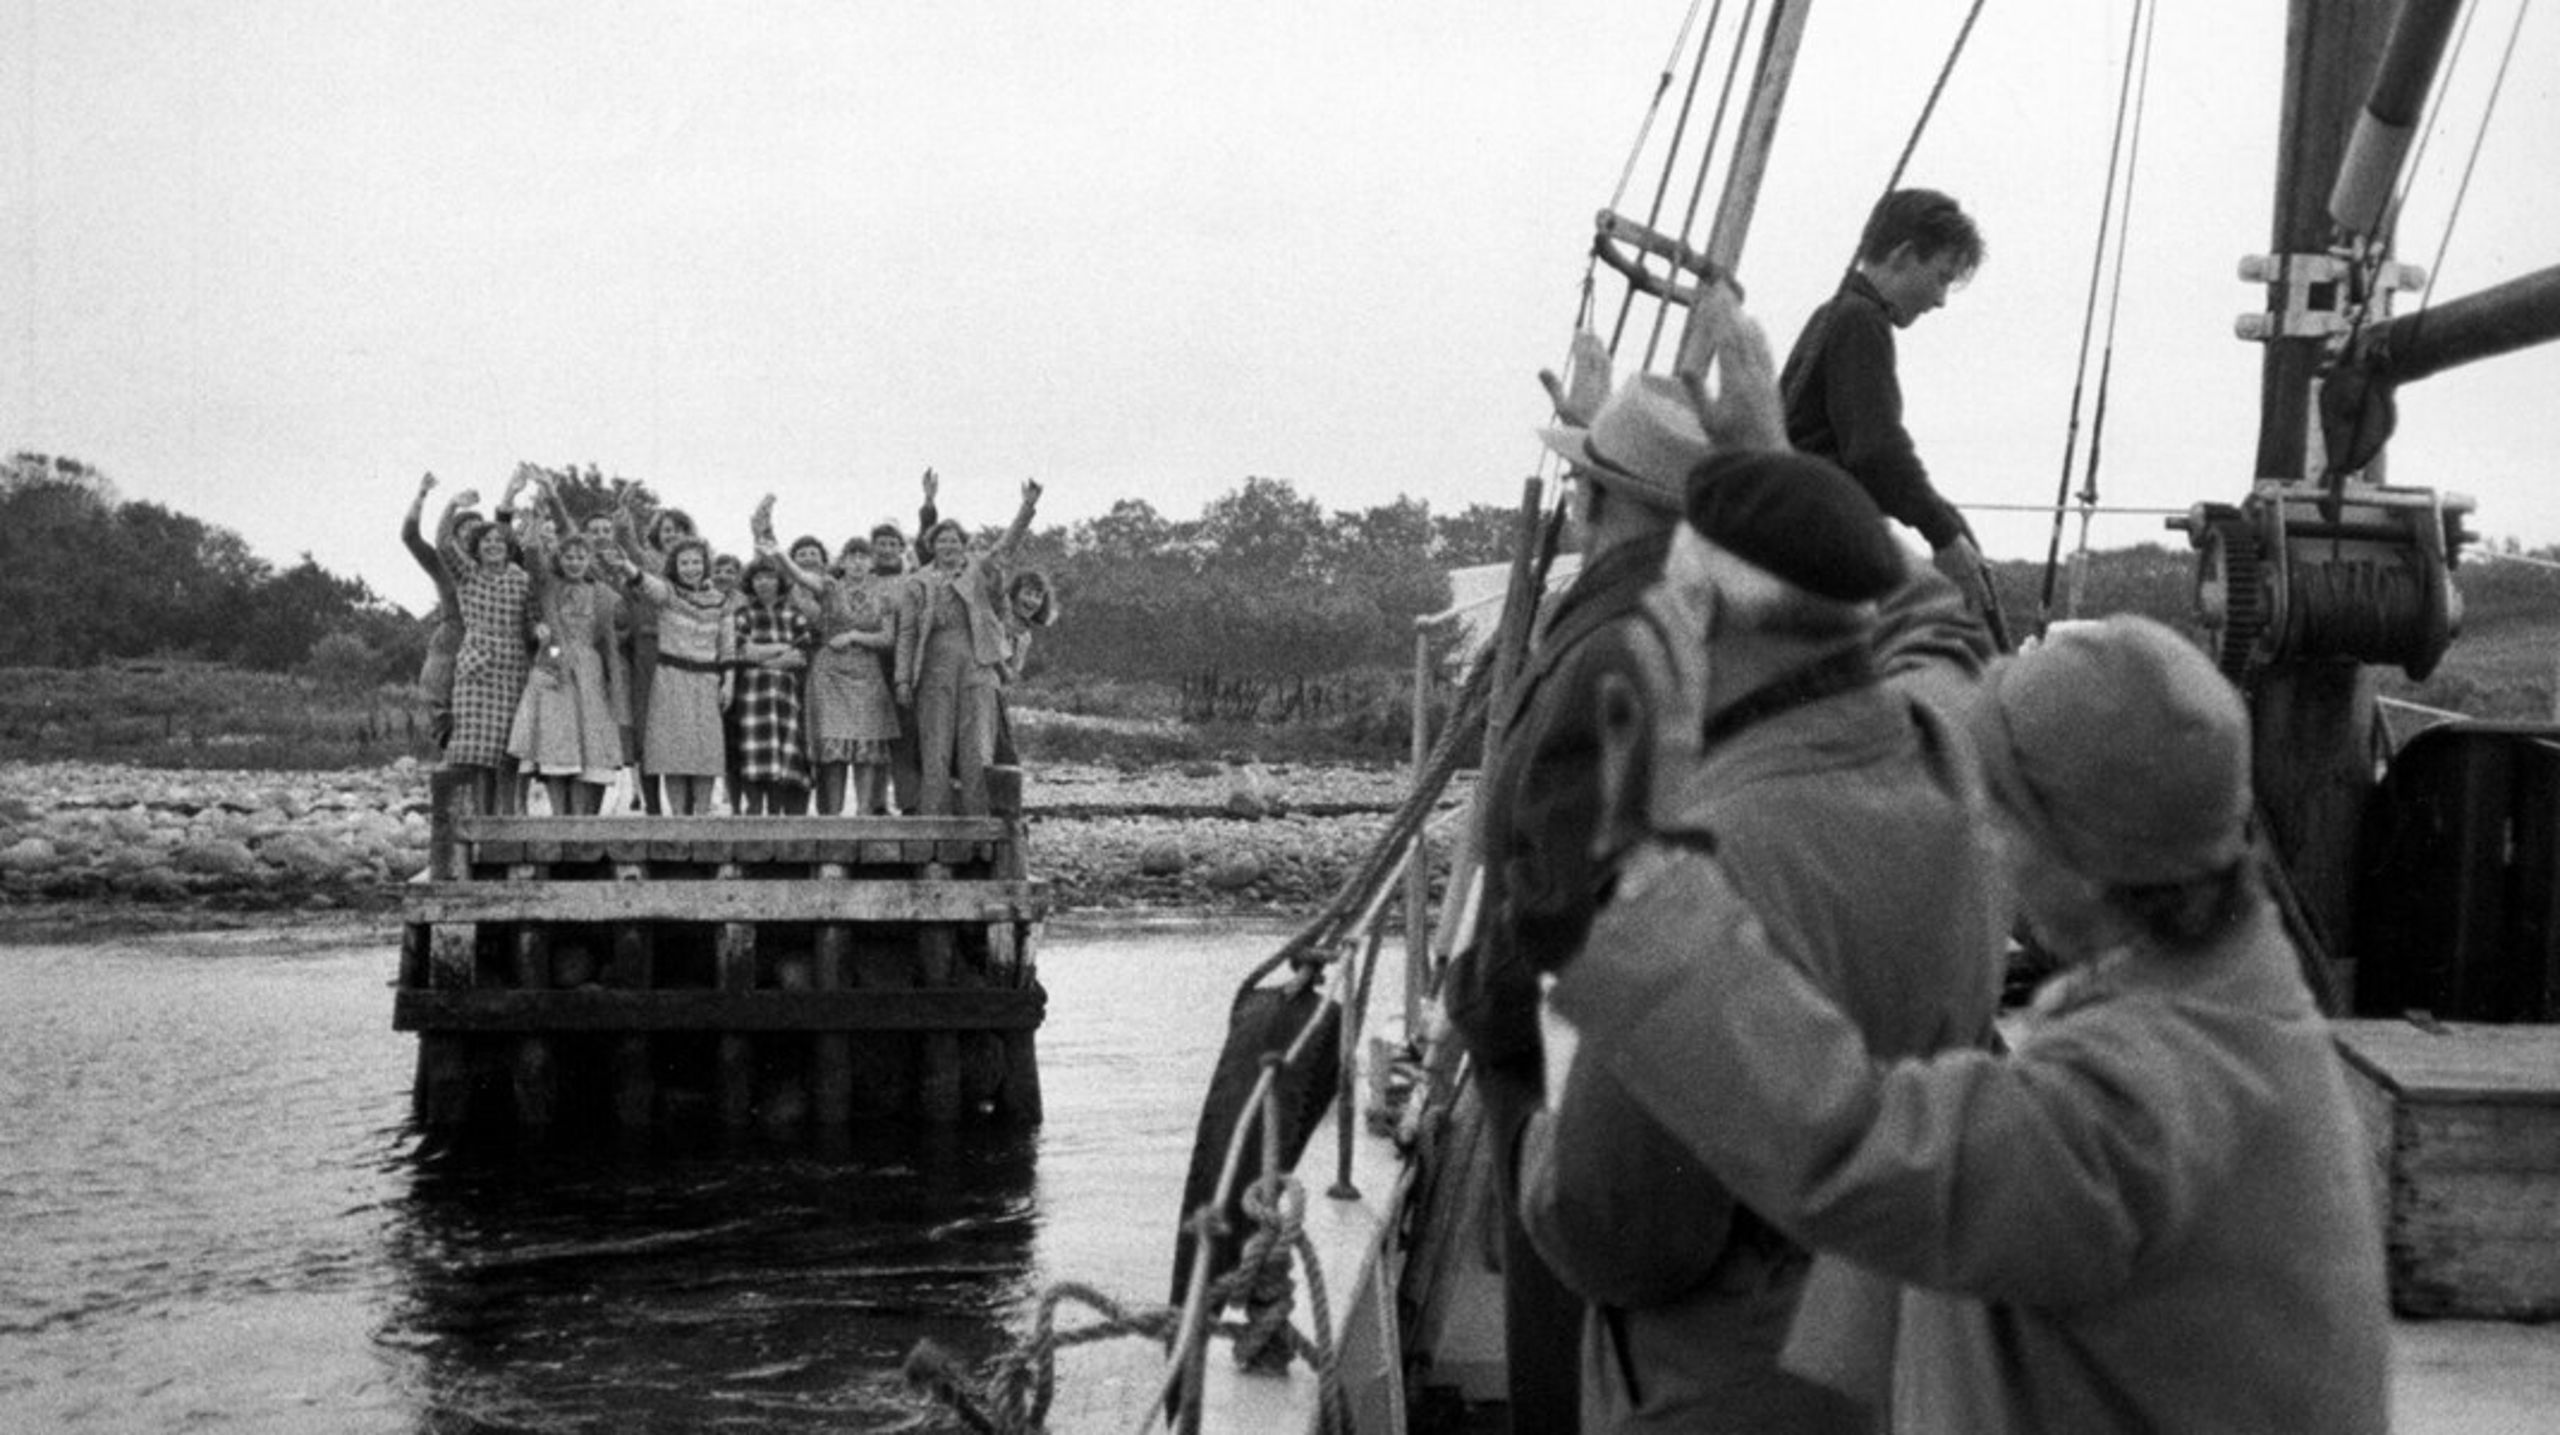 Fra 1923-1961 blev&nbsp;cirka 500 unge kvinder sejlet til Sprogø. Her blev de anbragt og&nbsp;isoleret, fordi de i statens øjne blev opfattet som "moralsk defekte".